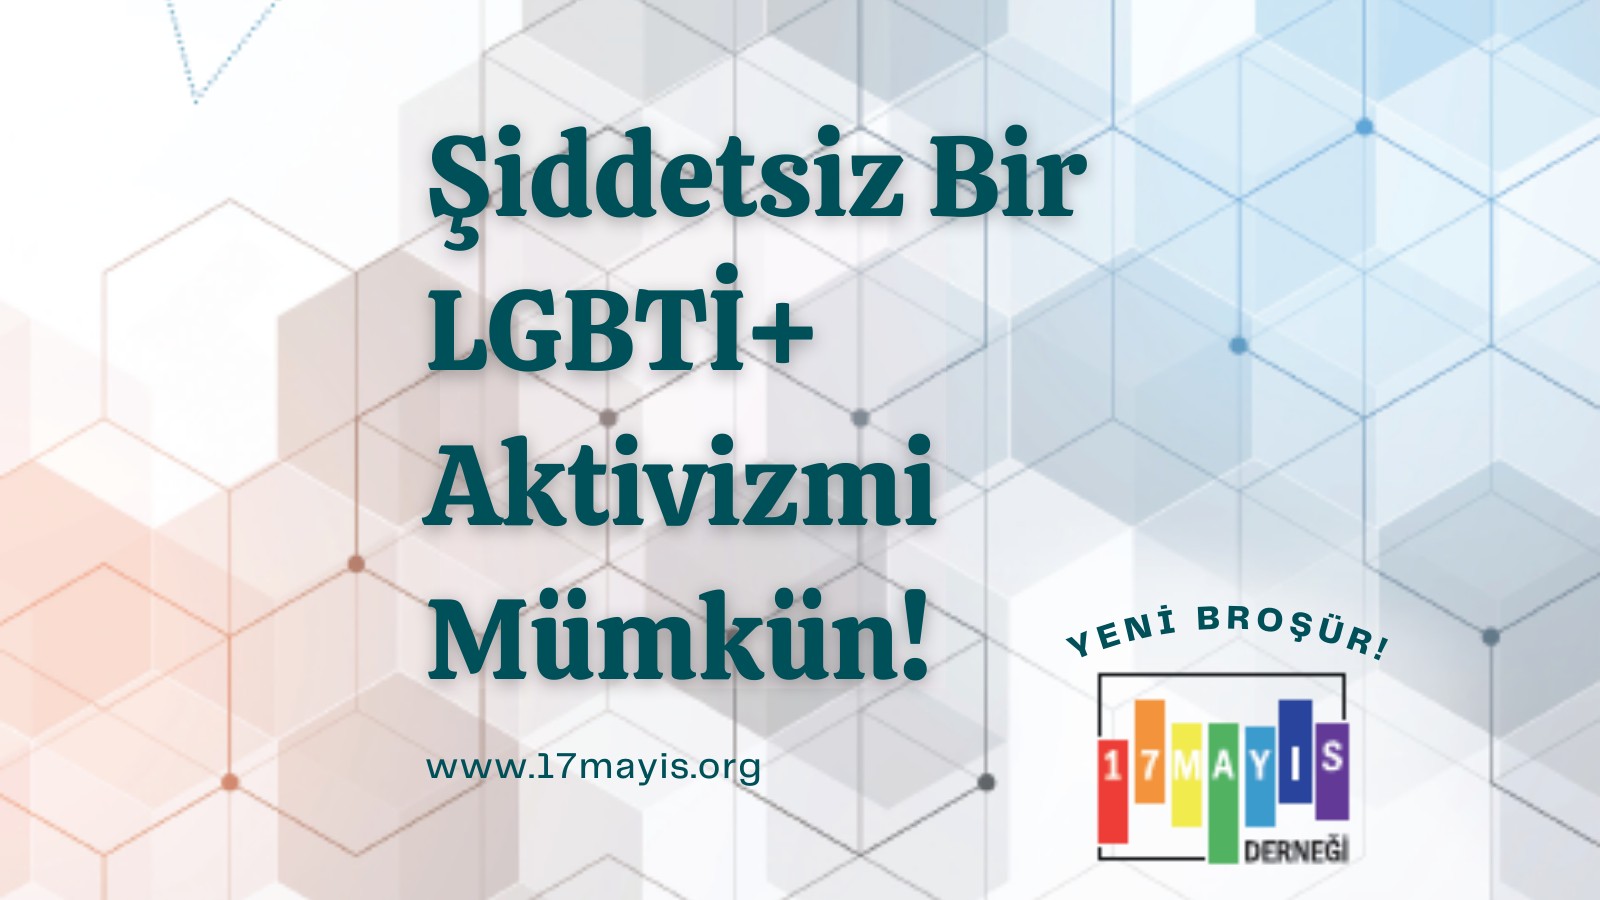 Şiddetsiz Bir LGBTİ+ Aktivizmi Mümkün! - 17 Mayıs